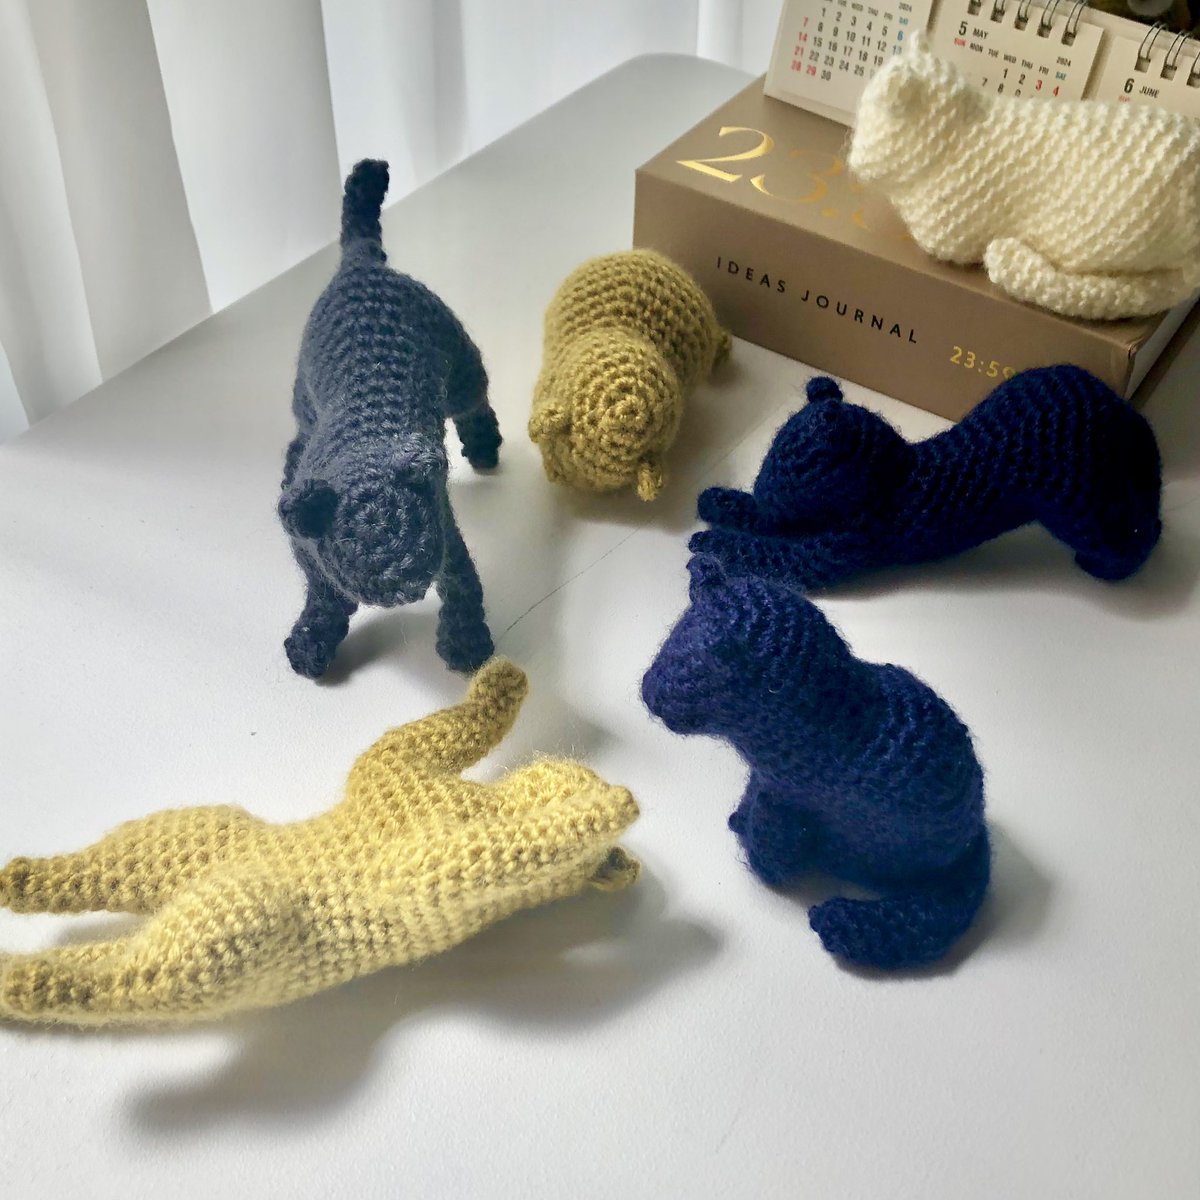 あびすさんの猫たち
楽しかった〜❤︎
色かえてまた編みます
 #あびすのあみぐるみ #猫 #編み物